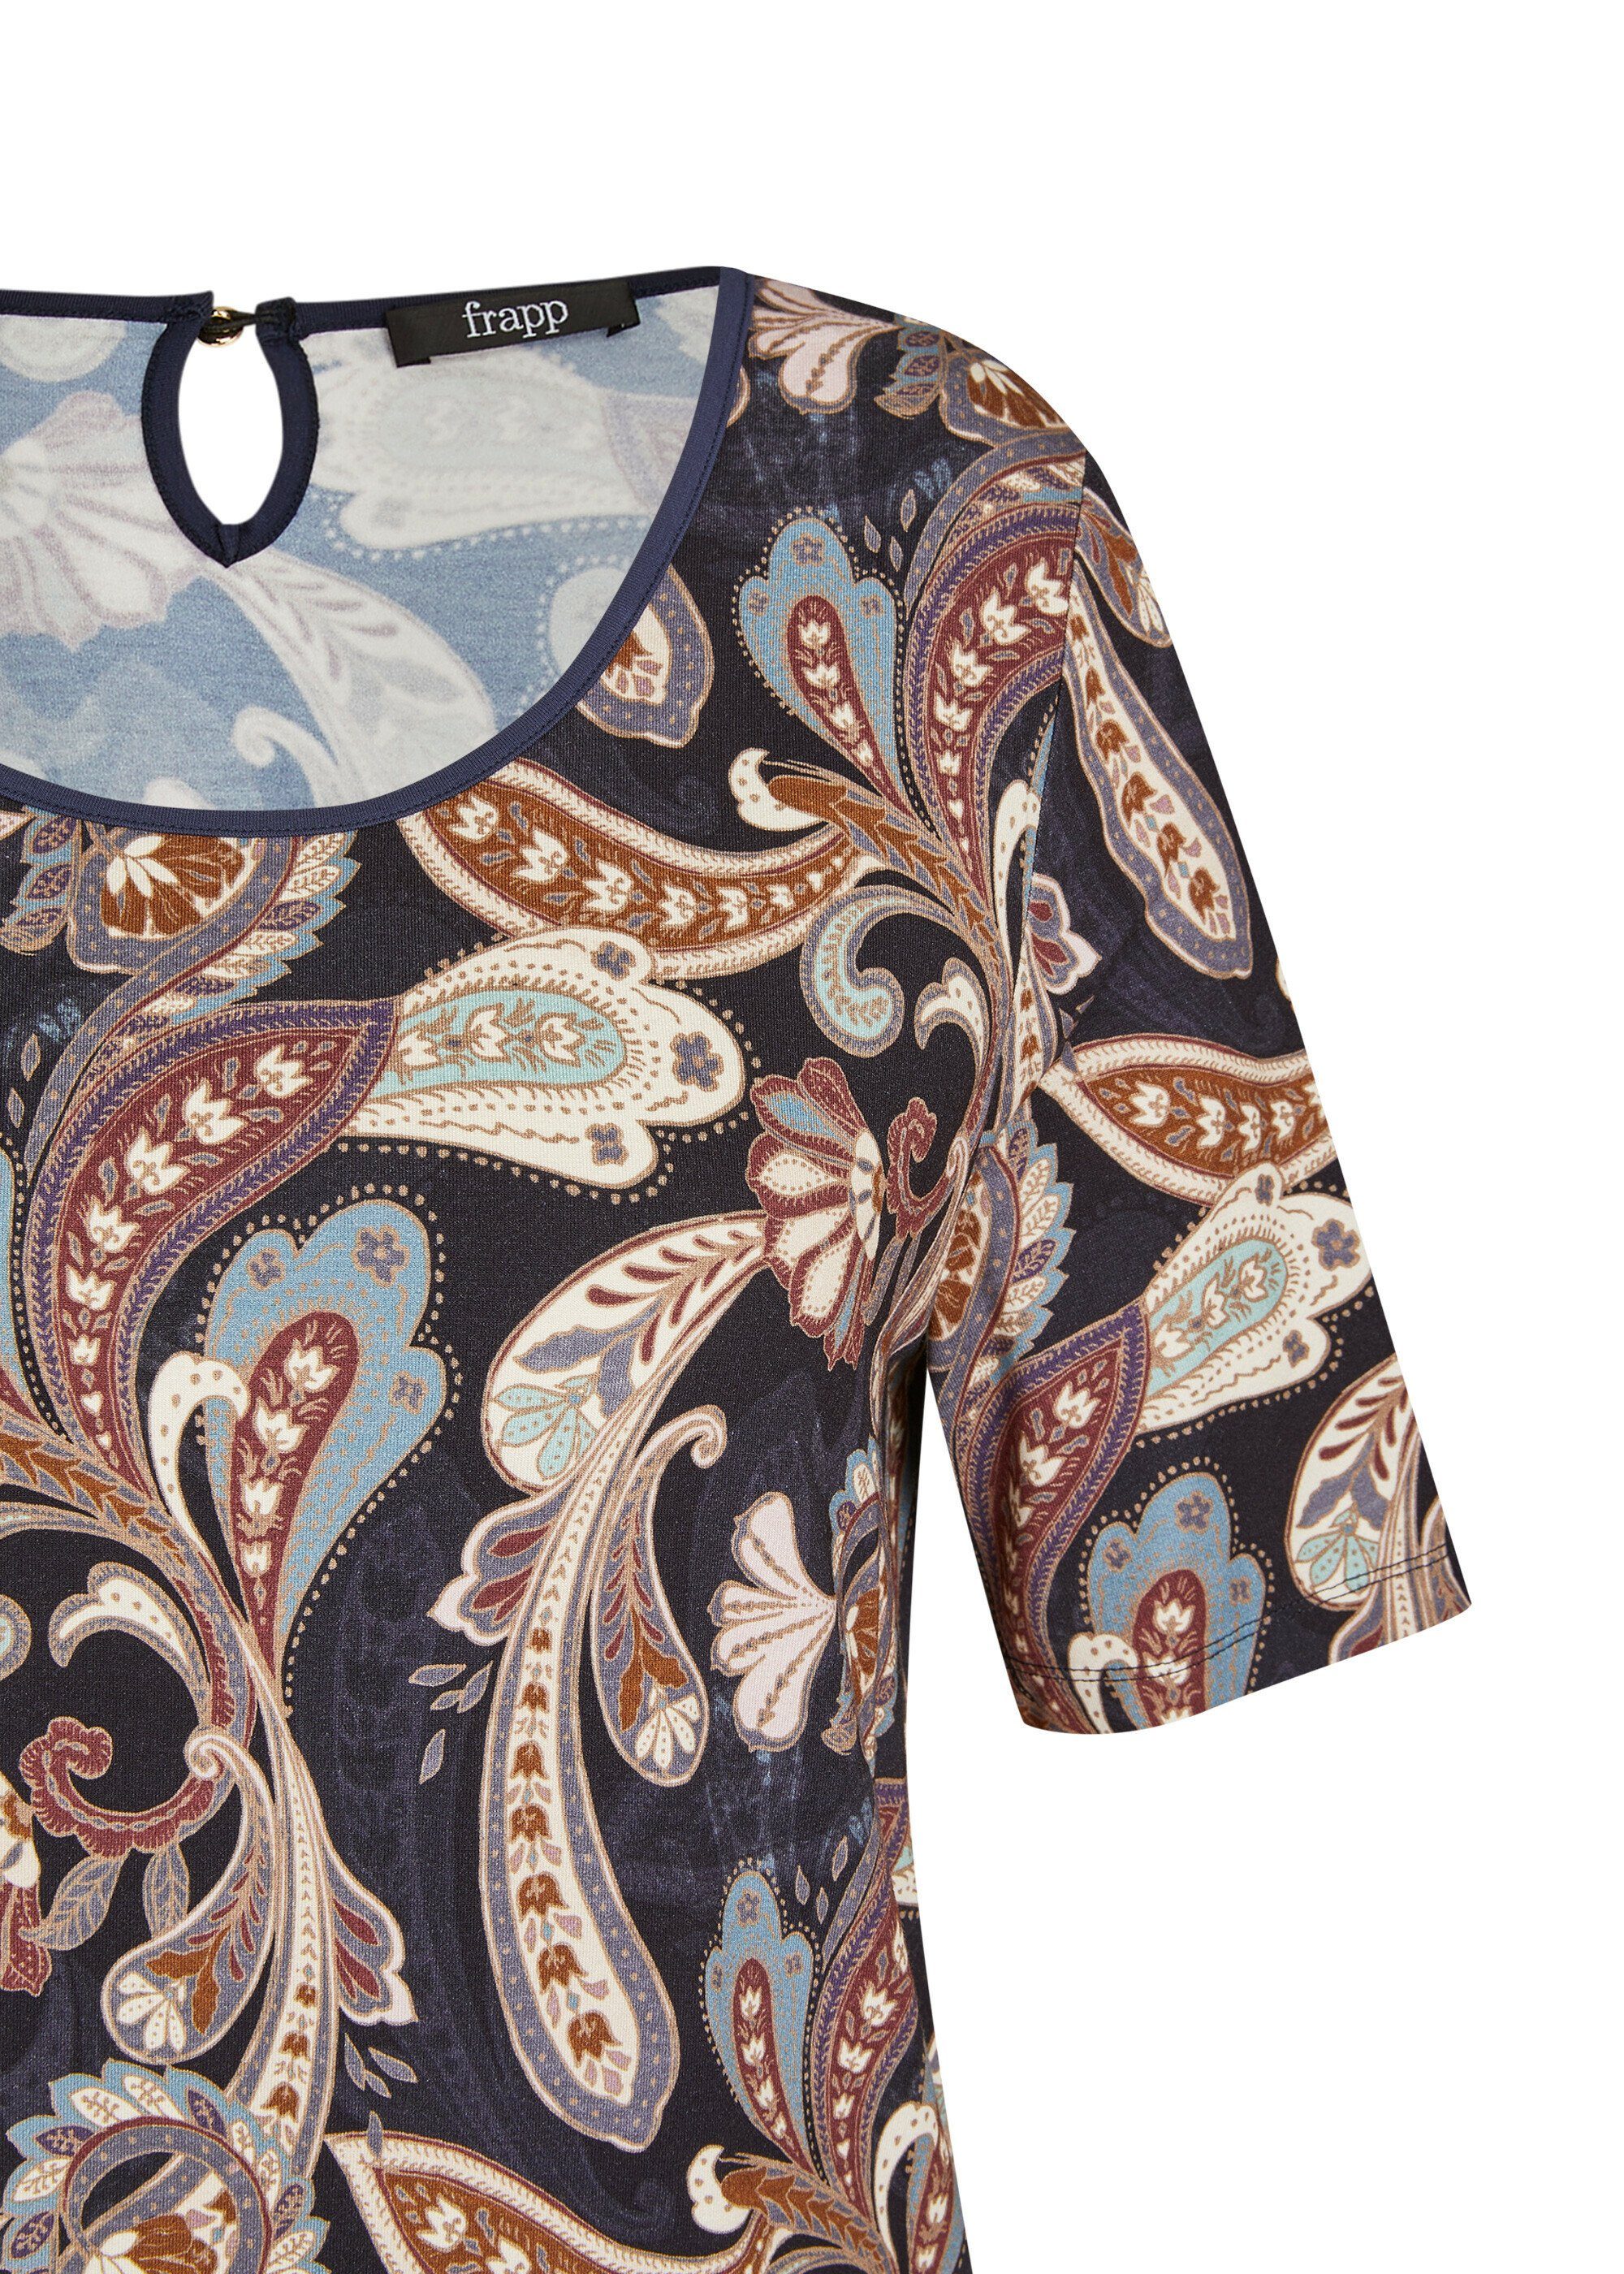 Print-Shirt Muster mit FRAPP Romantisches orientalischem T-Shirt